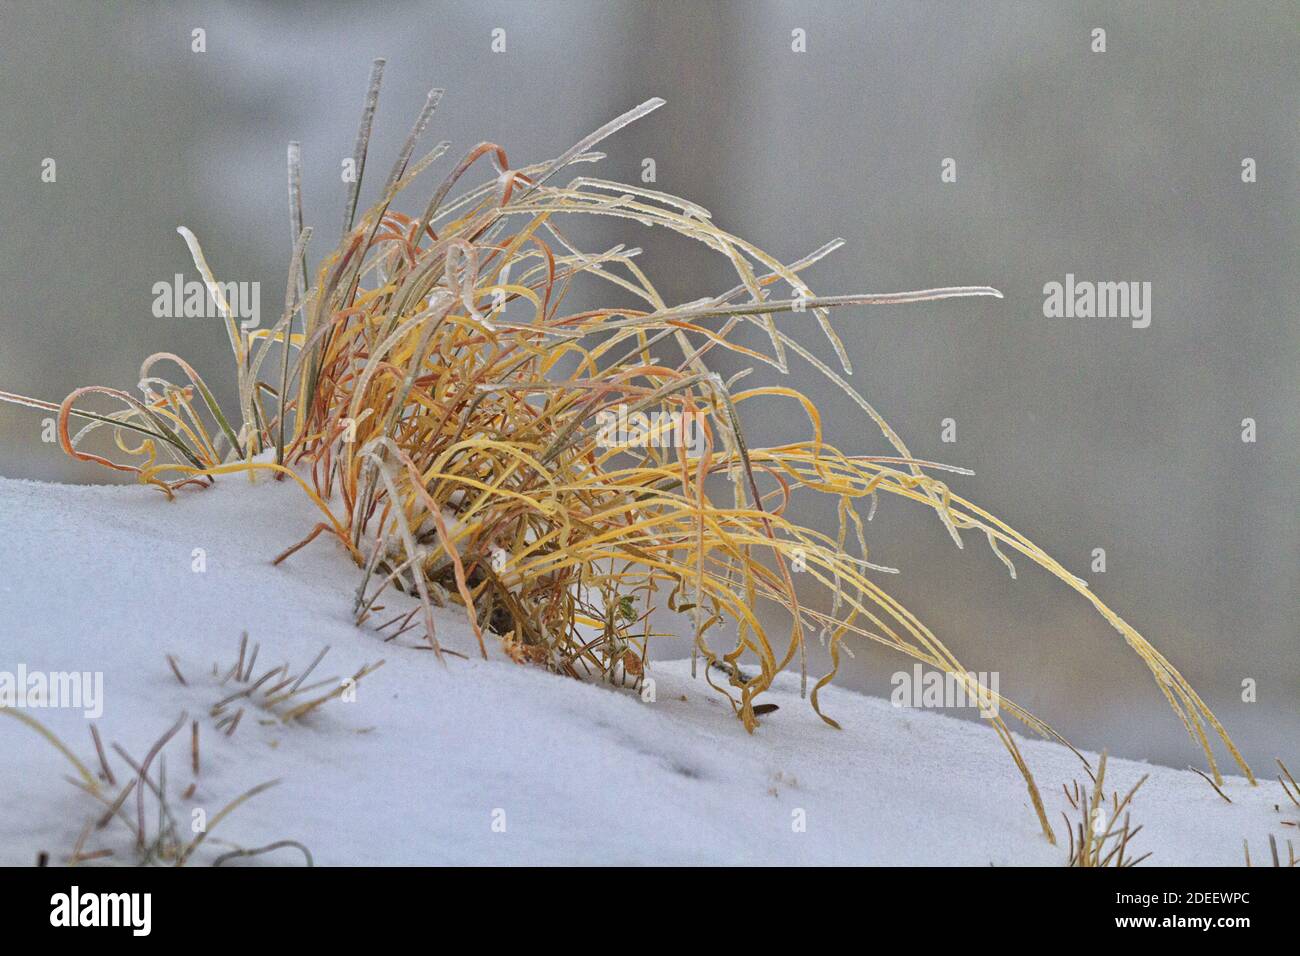 L'inverno tocca la terra vista in una graziosa curva d'oro, erba secca racchiusa in ghiaccio su una coperta leggera di neve polverosa Foto Stock